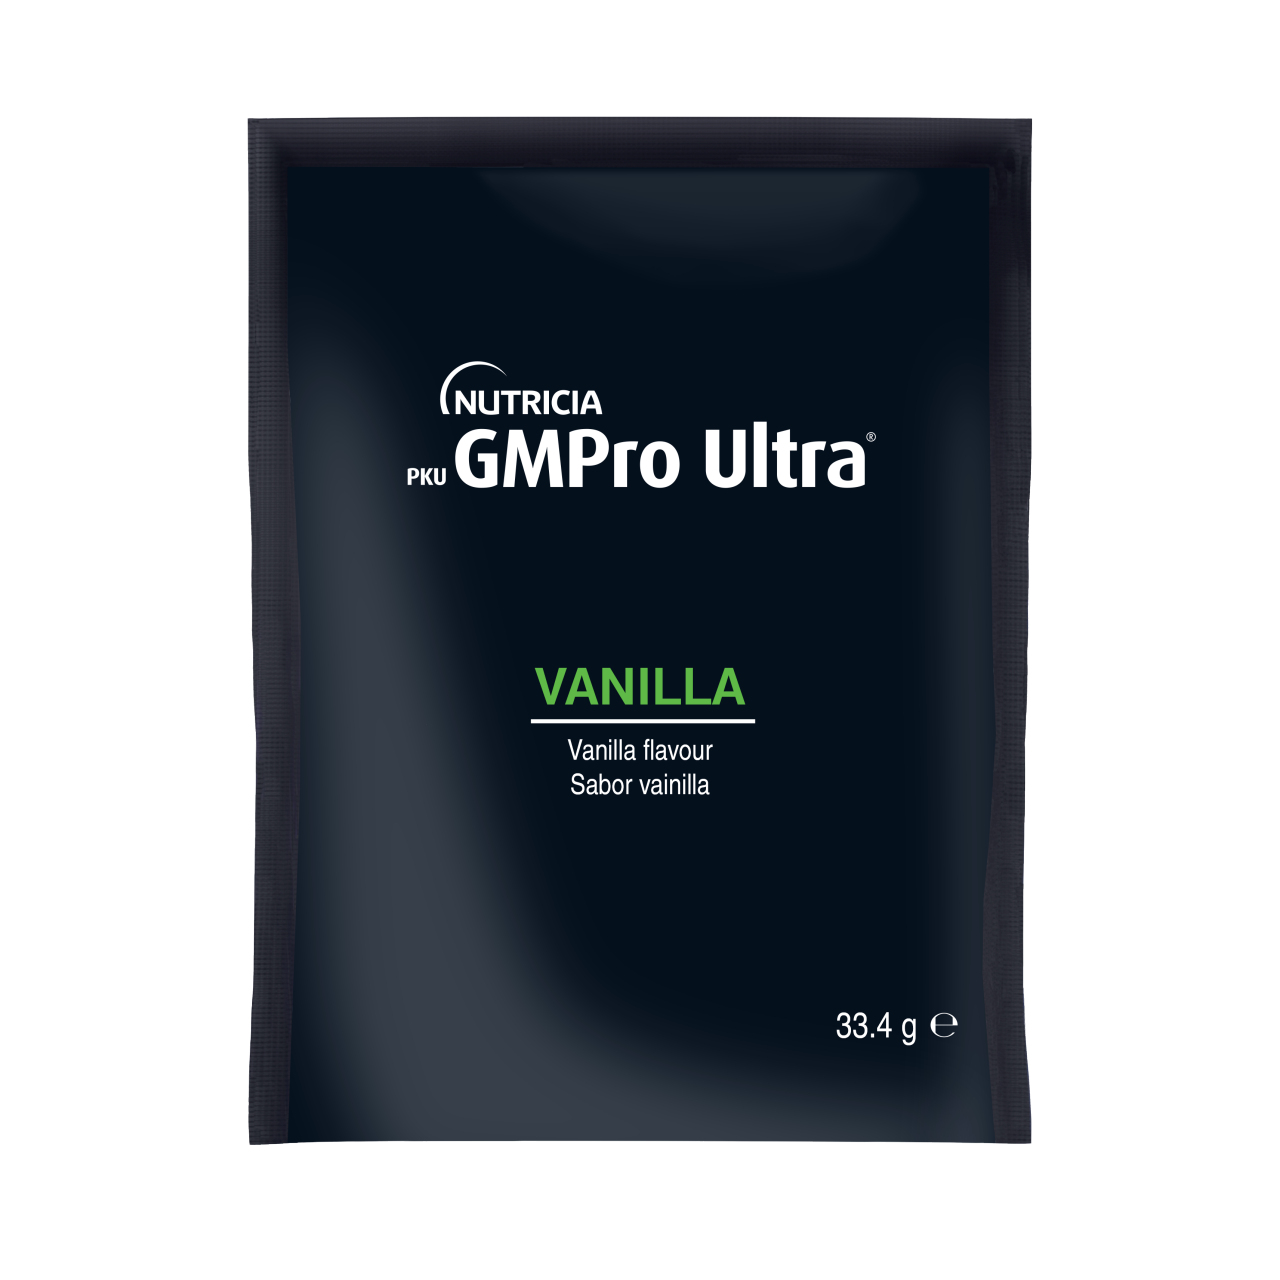 PKU GMPro Ultra Vanilla packshot